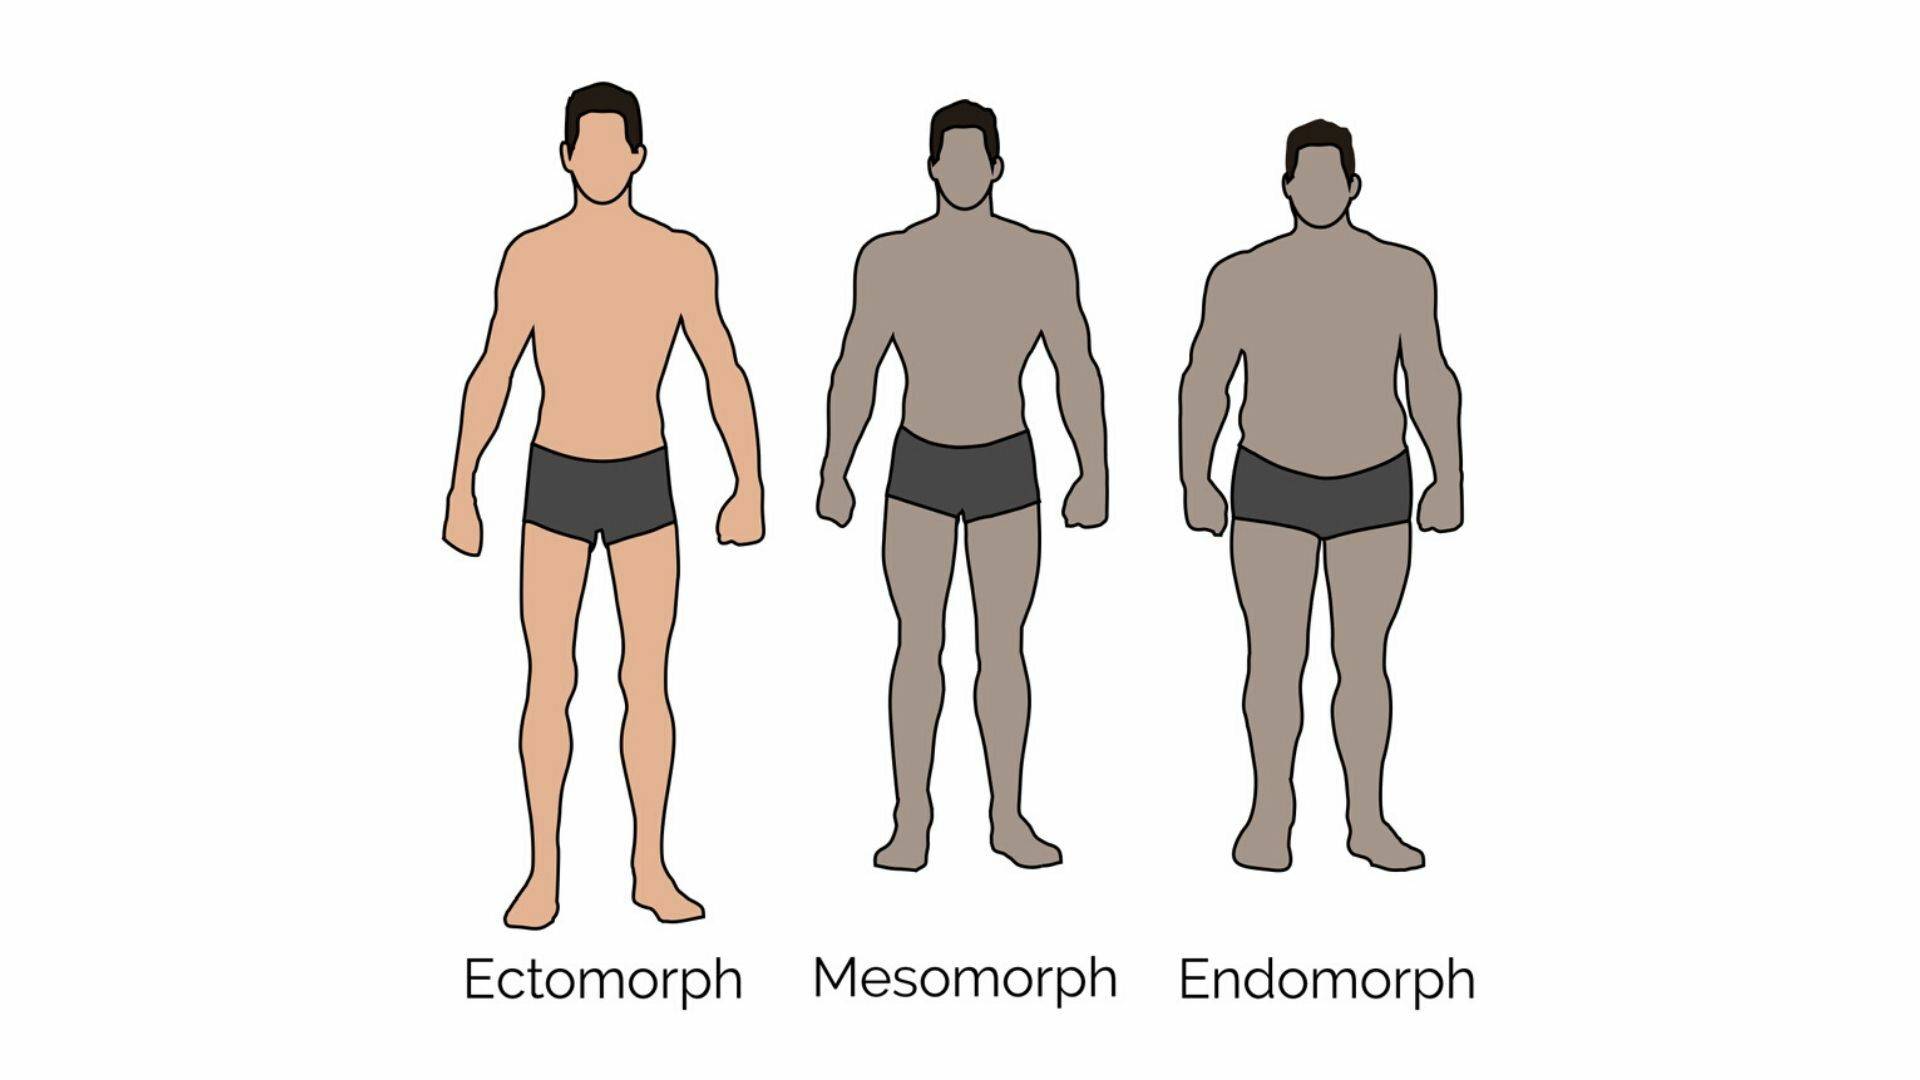 Как узнать свой соматотип: эктоморф, мезоморф или эндоморф